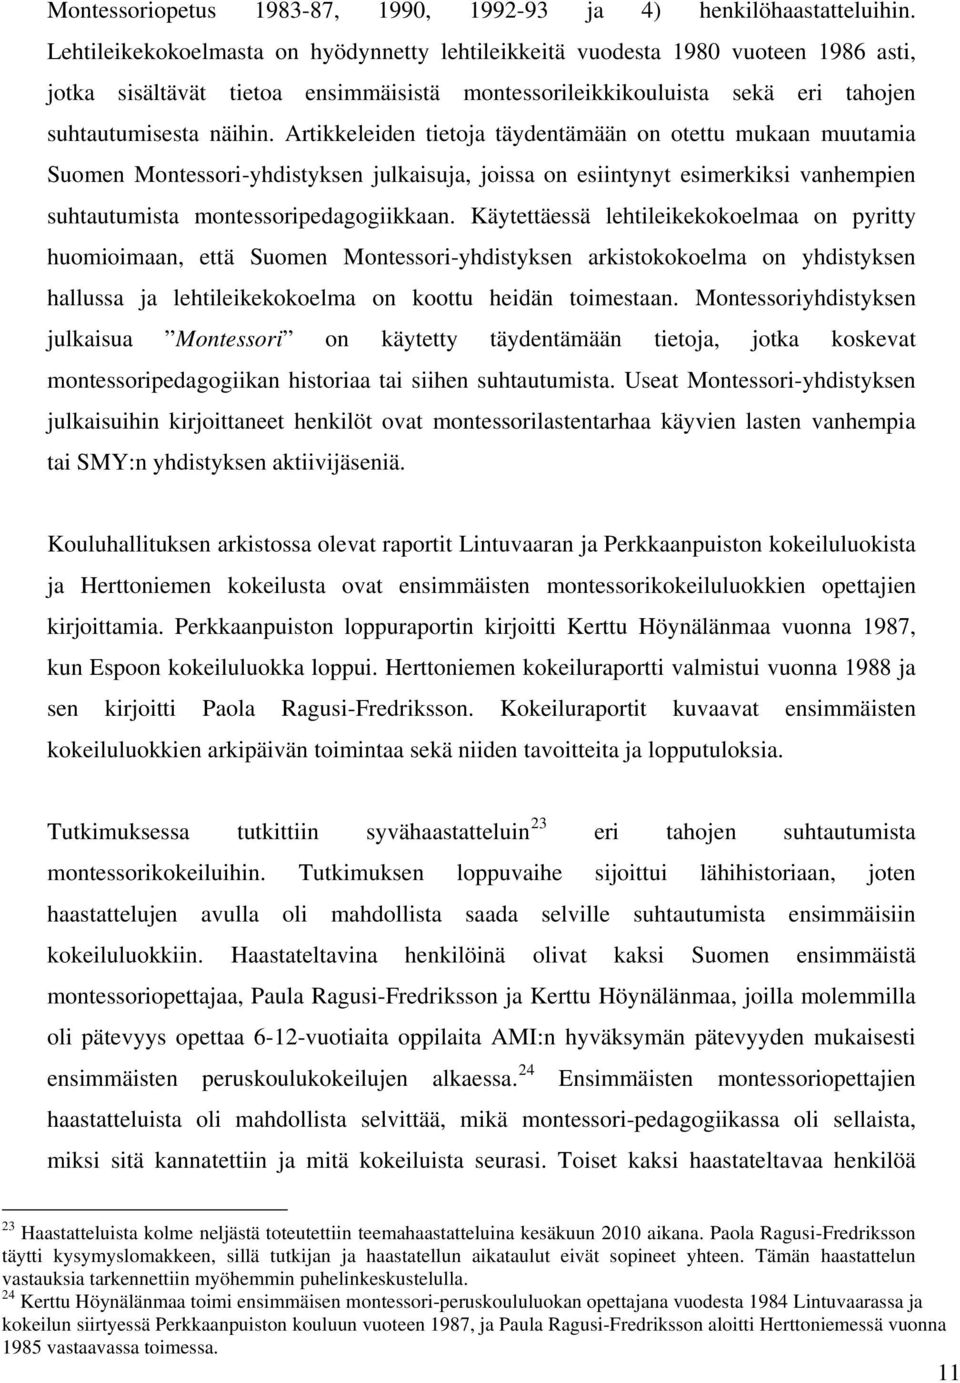 Artikkeleiden tietoja täydentämään on otettu mukaan muutamia Suomen Montessori-yhdistyksen julkaisuja, joissa on esiintynyt esimerkiksi vanhempien suhtautumista montessoripedagogiikkaan.